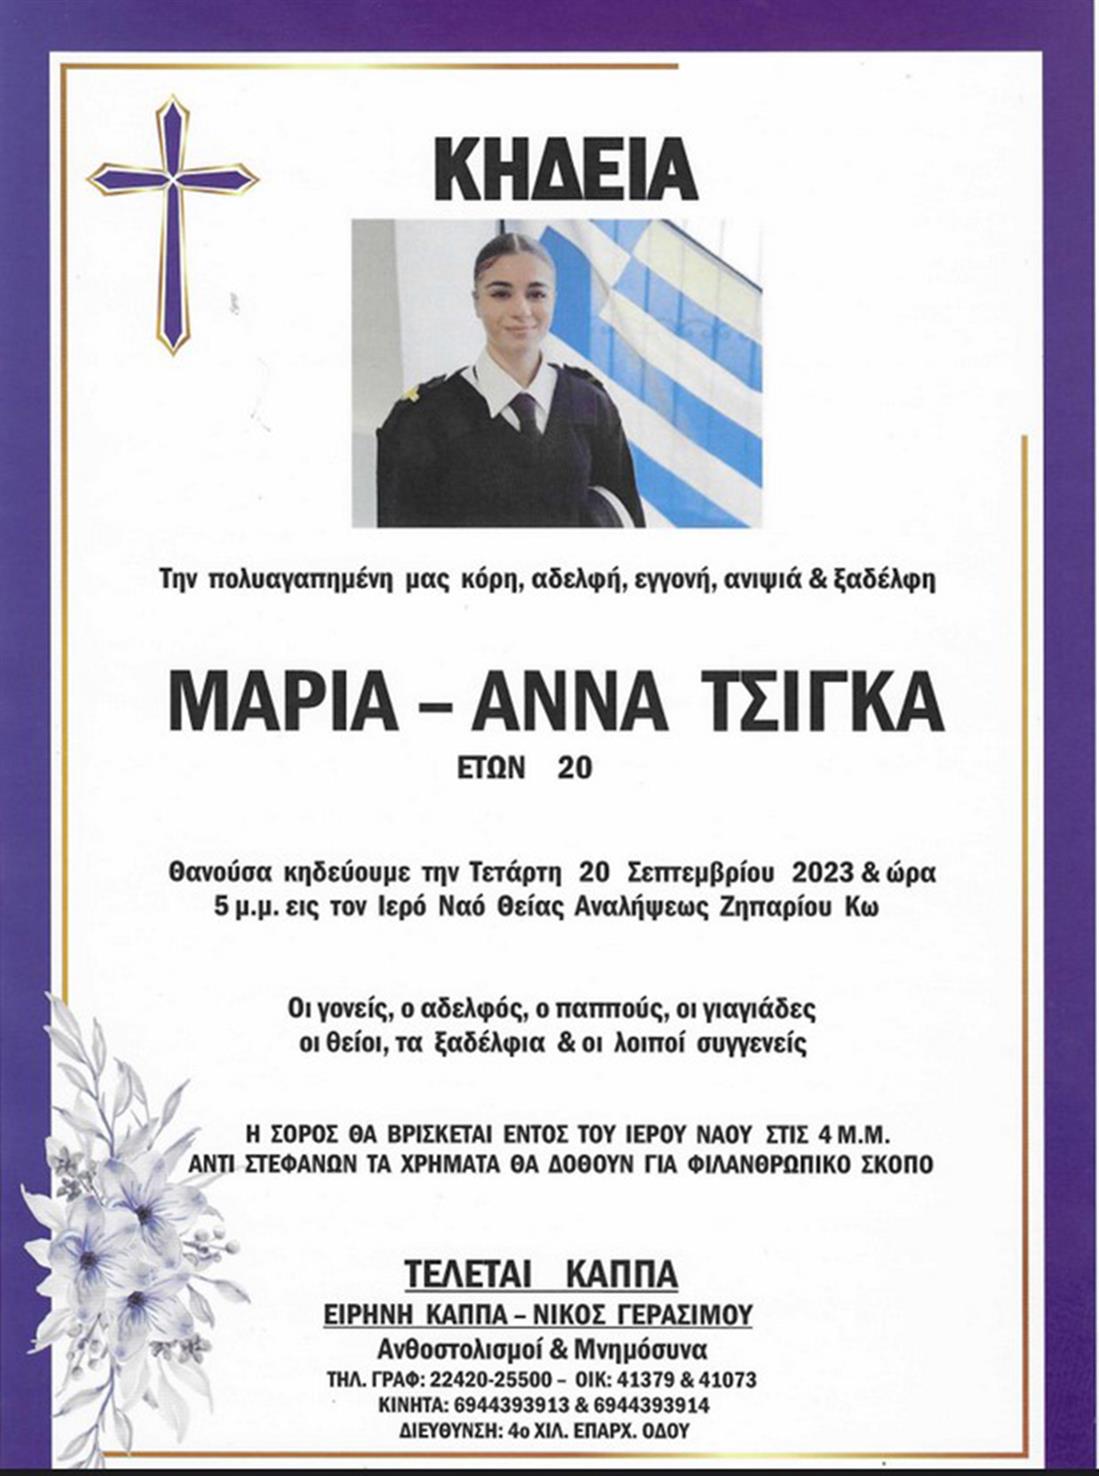 Μαριάννα Τσίγκα - Μαρία Άννα Τσίγκα - κηδεία